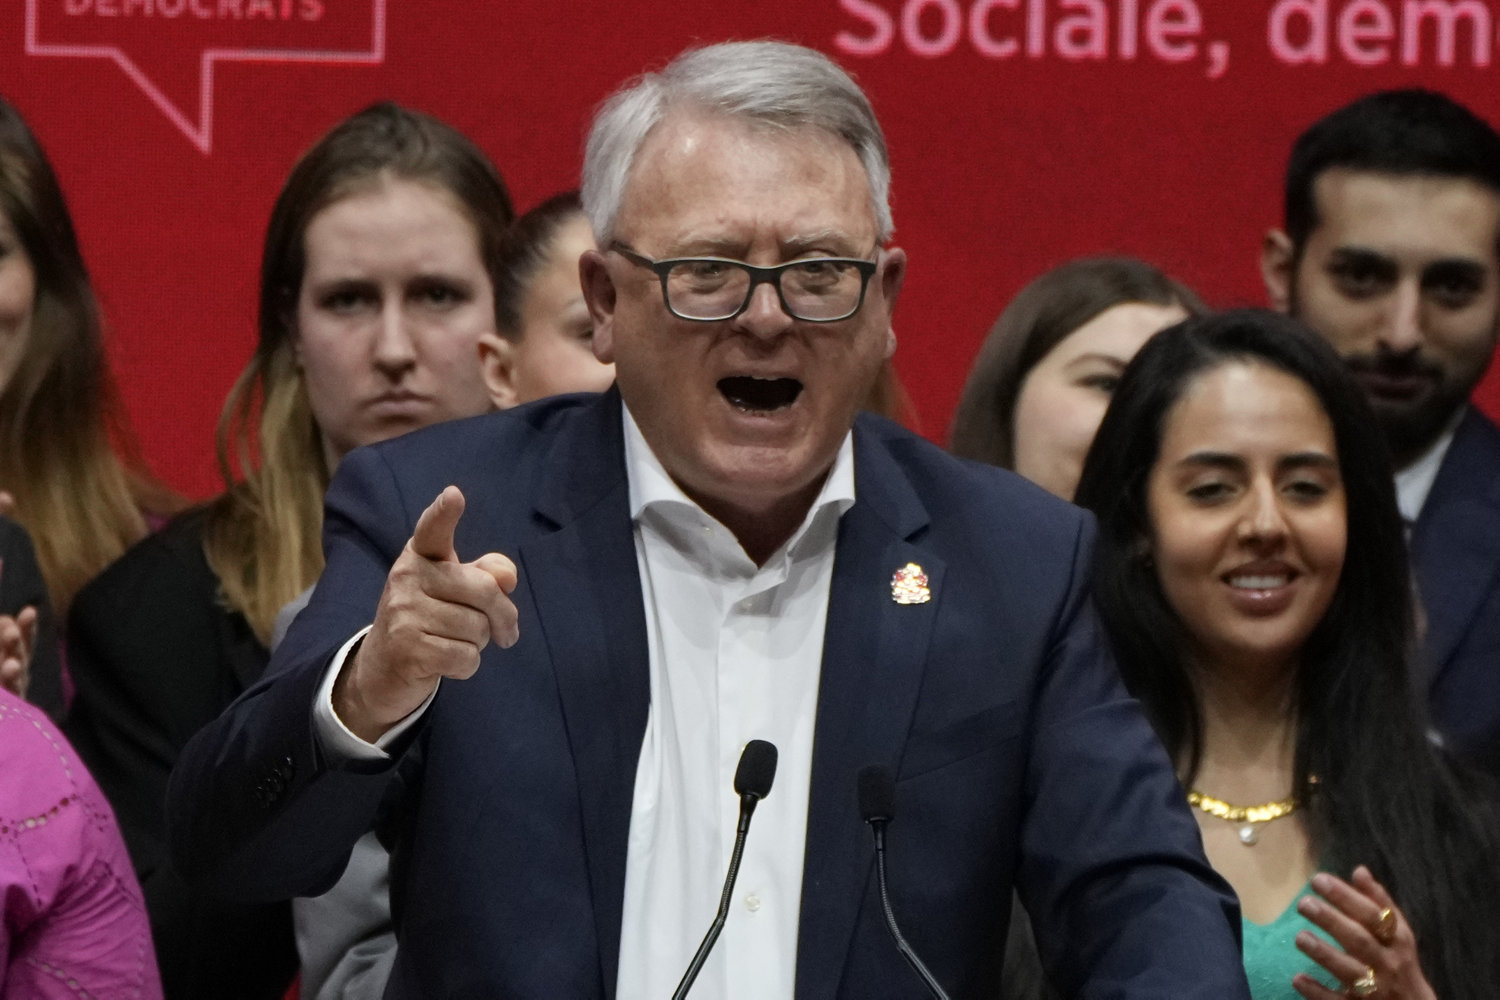 socialdemokrater vælger jobkommissær til at udfordre von der leyen